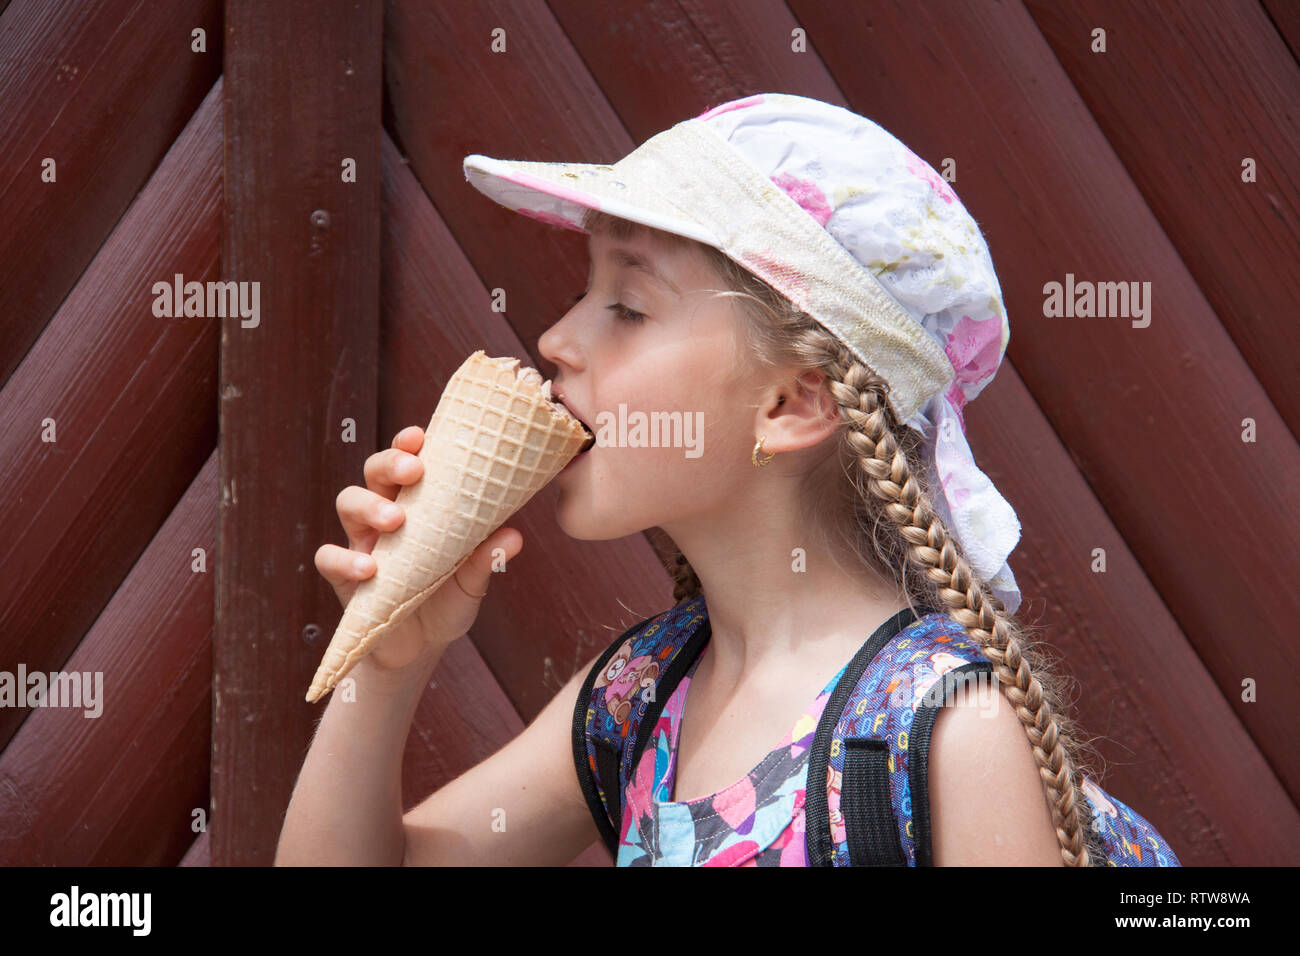 girl in a cap eats ice cream Stock Photo